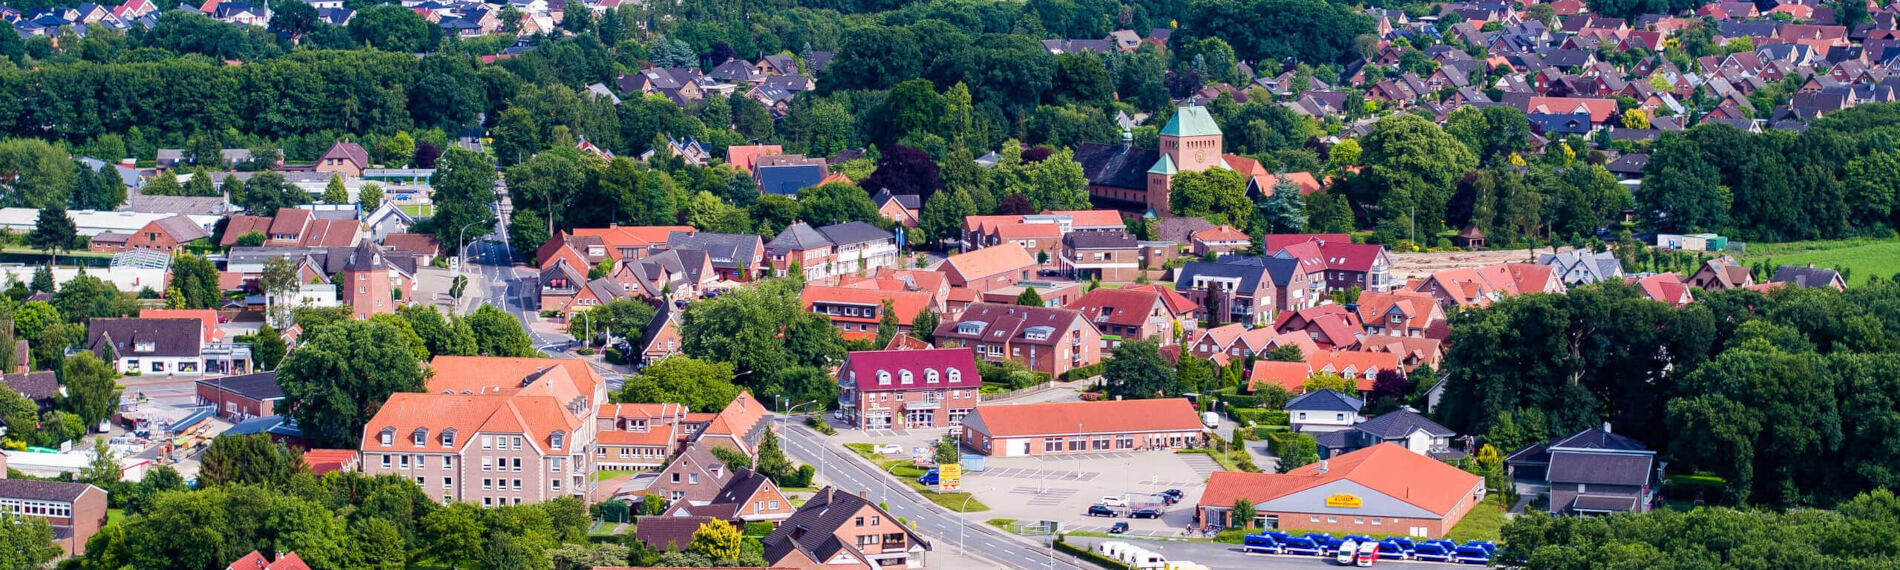 Luftbild vom Ortsteil Wietmarschen